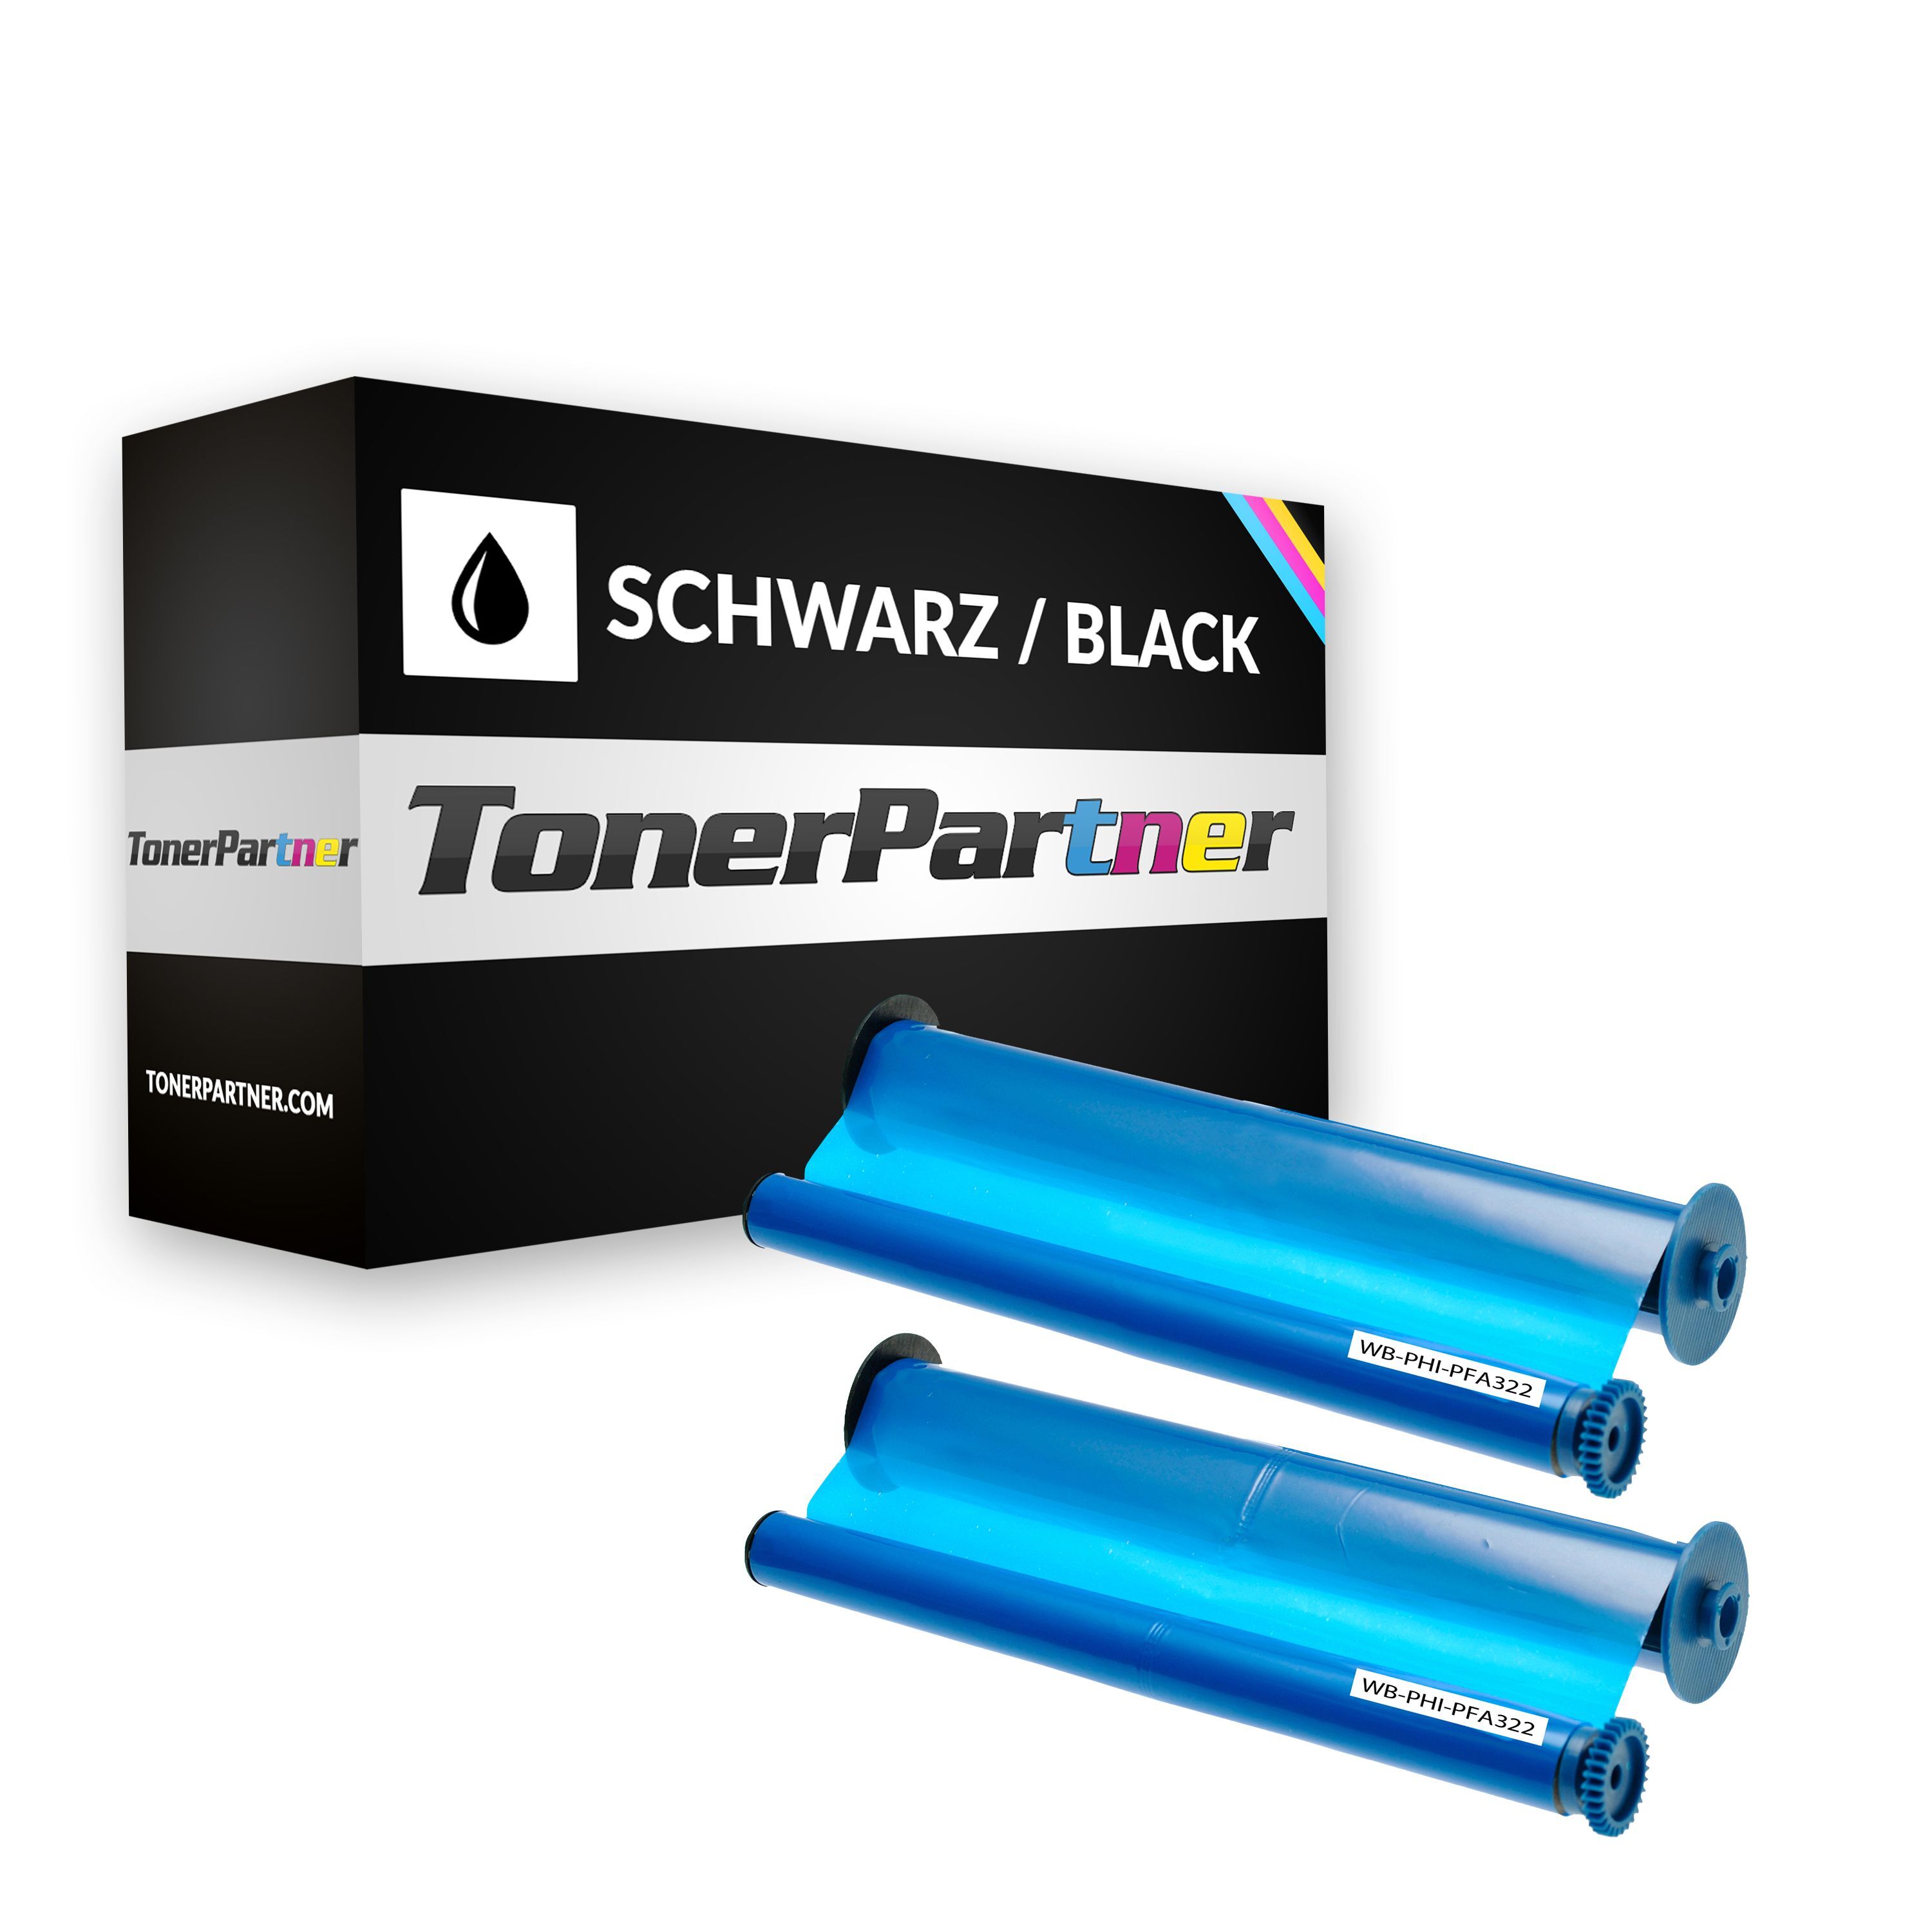 TonerPartner Kompatibel zu Philips PPF 456 Inkfilm (906115306011 / PFA-322) schwarz, 160 Seiten, 9,09 Rp pro Seite von TonerPartner